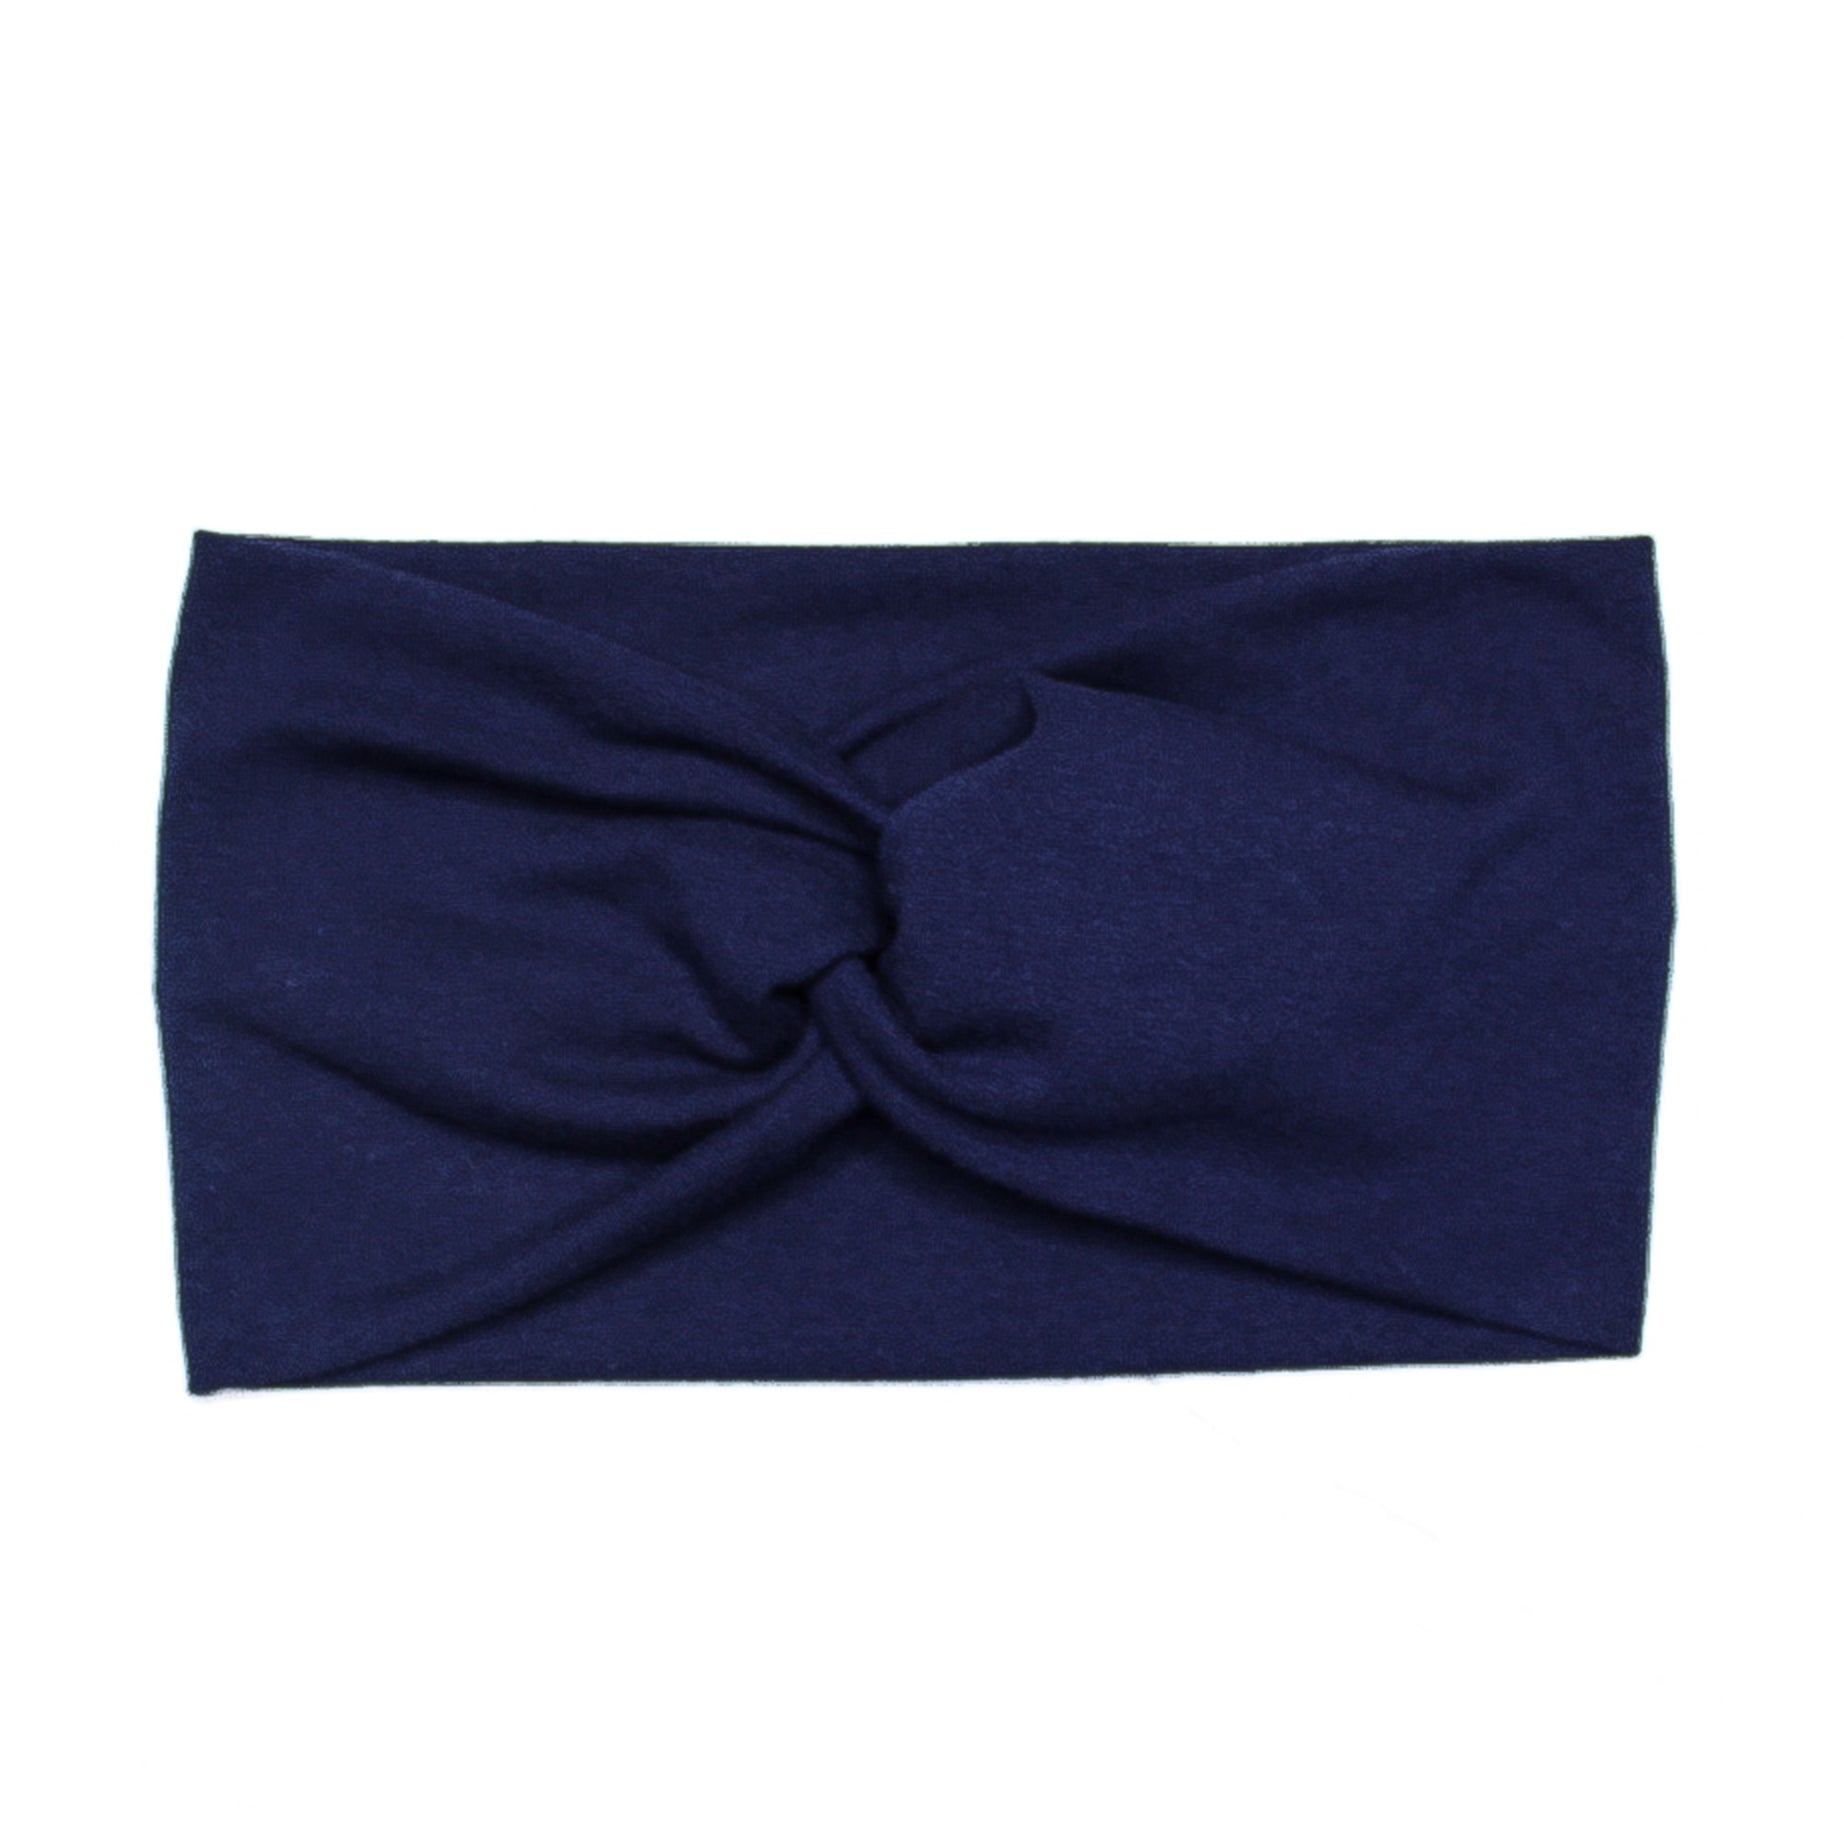 Wide Solid Navy Blue Twist Headband, Cotton Spandex